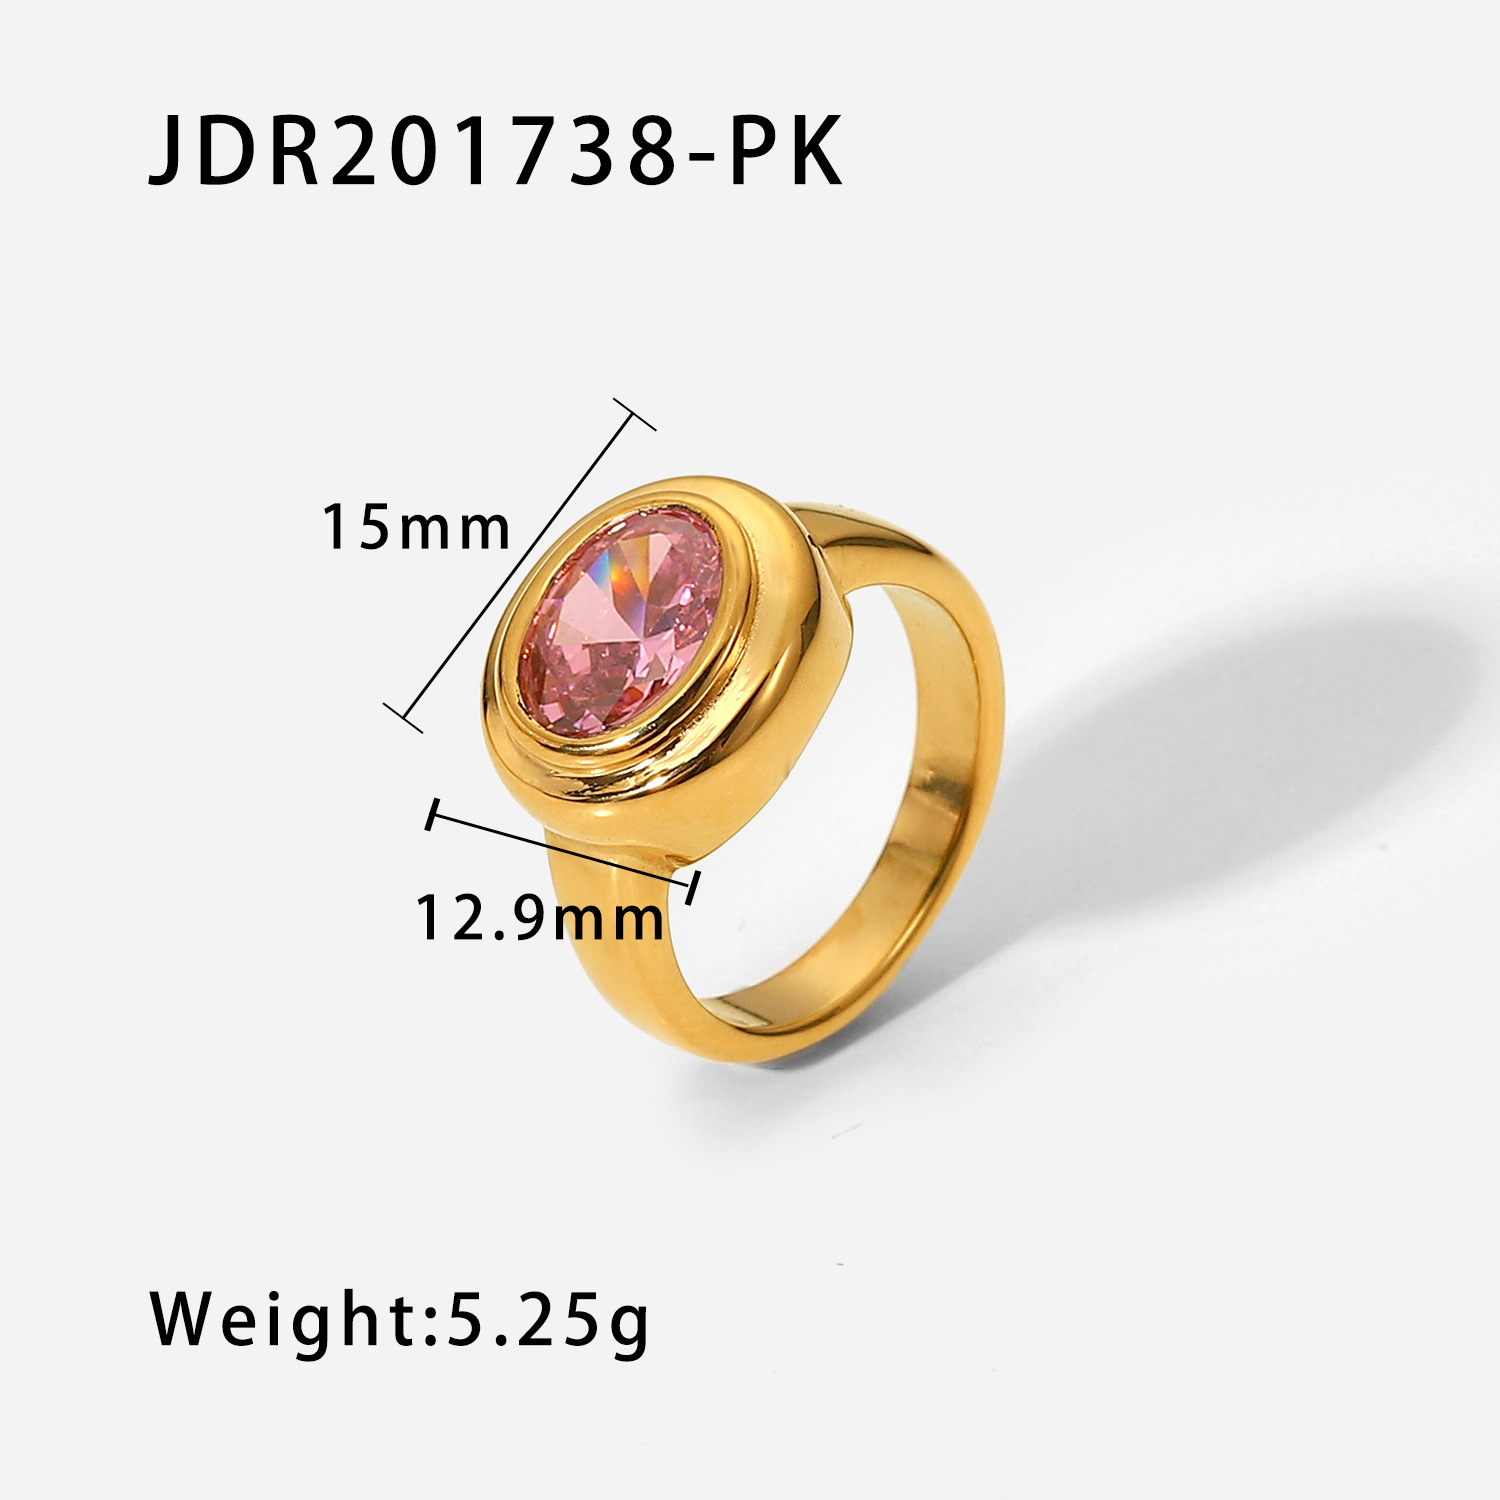 JDR201738-PK